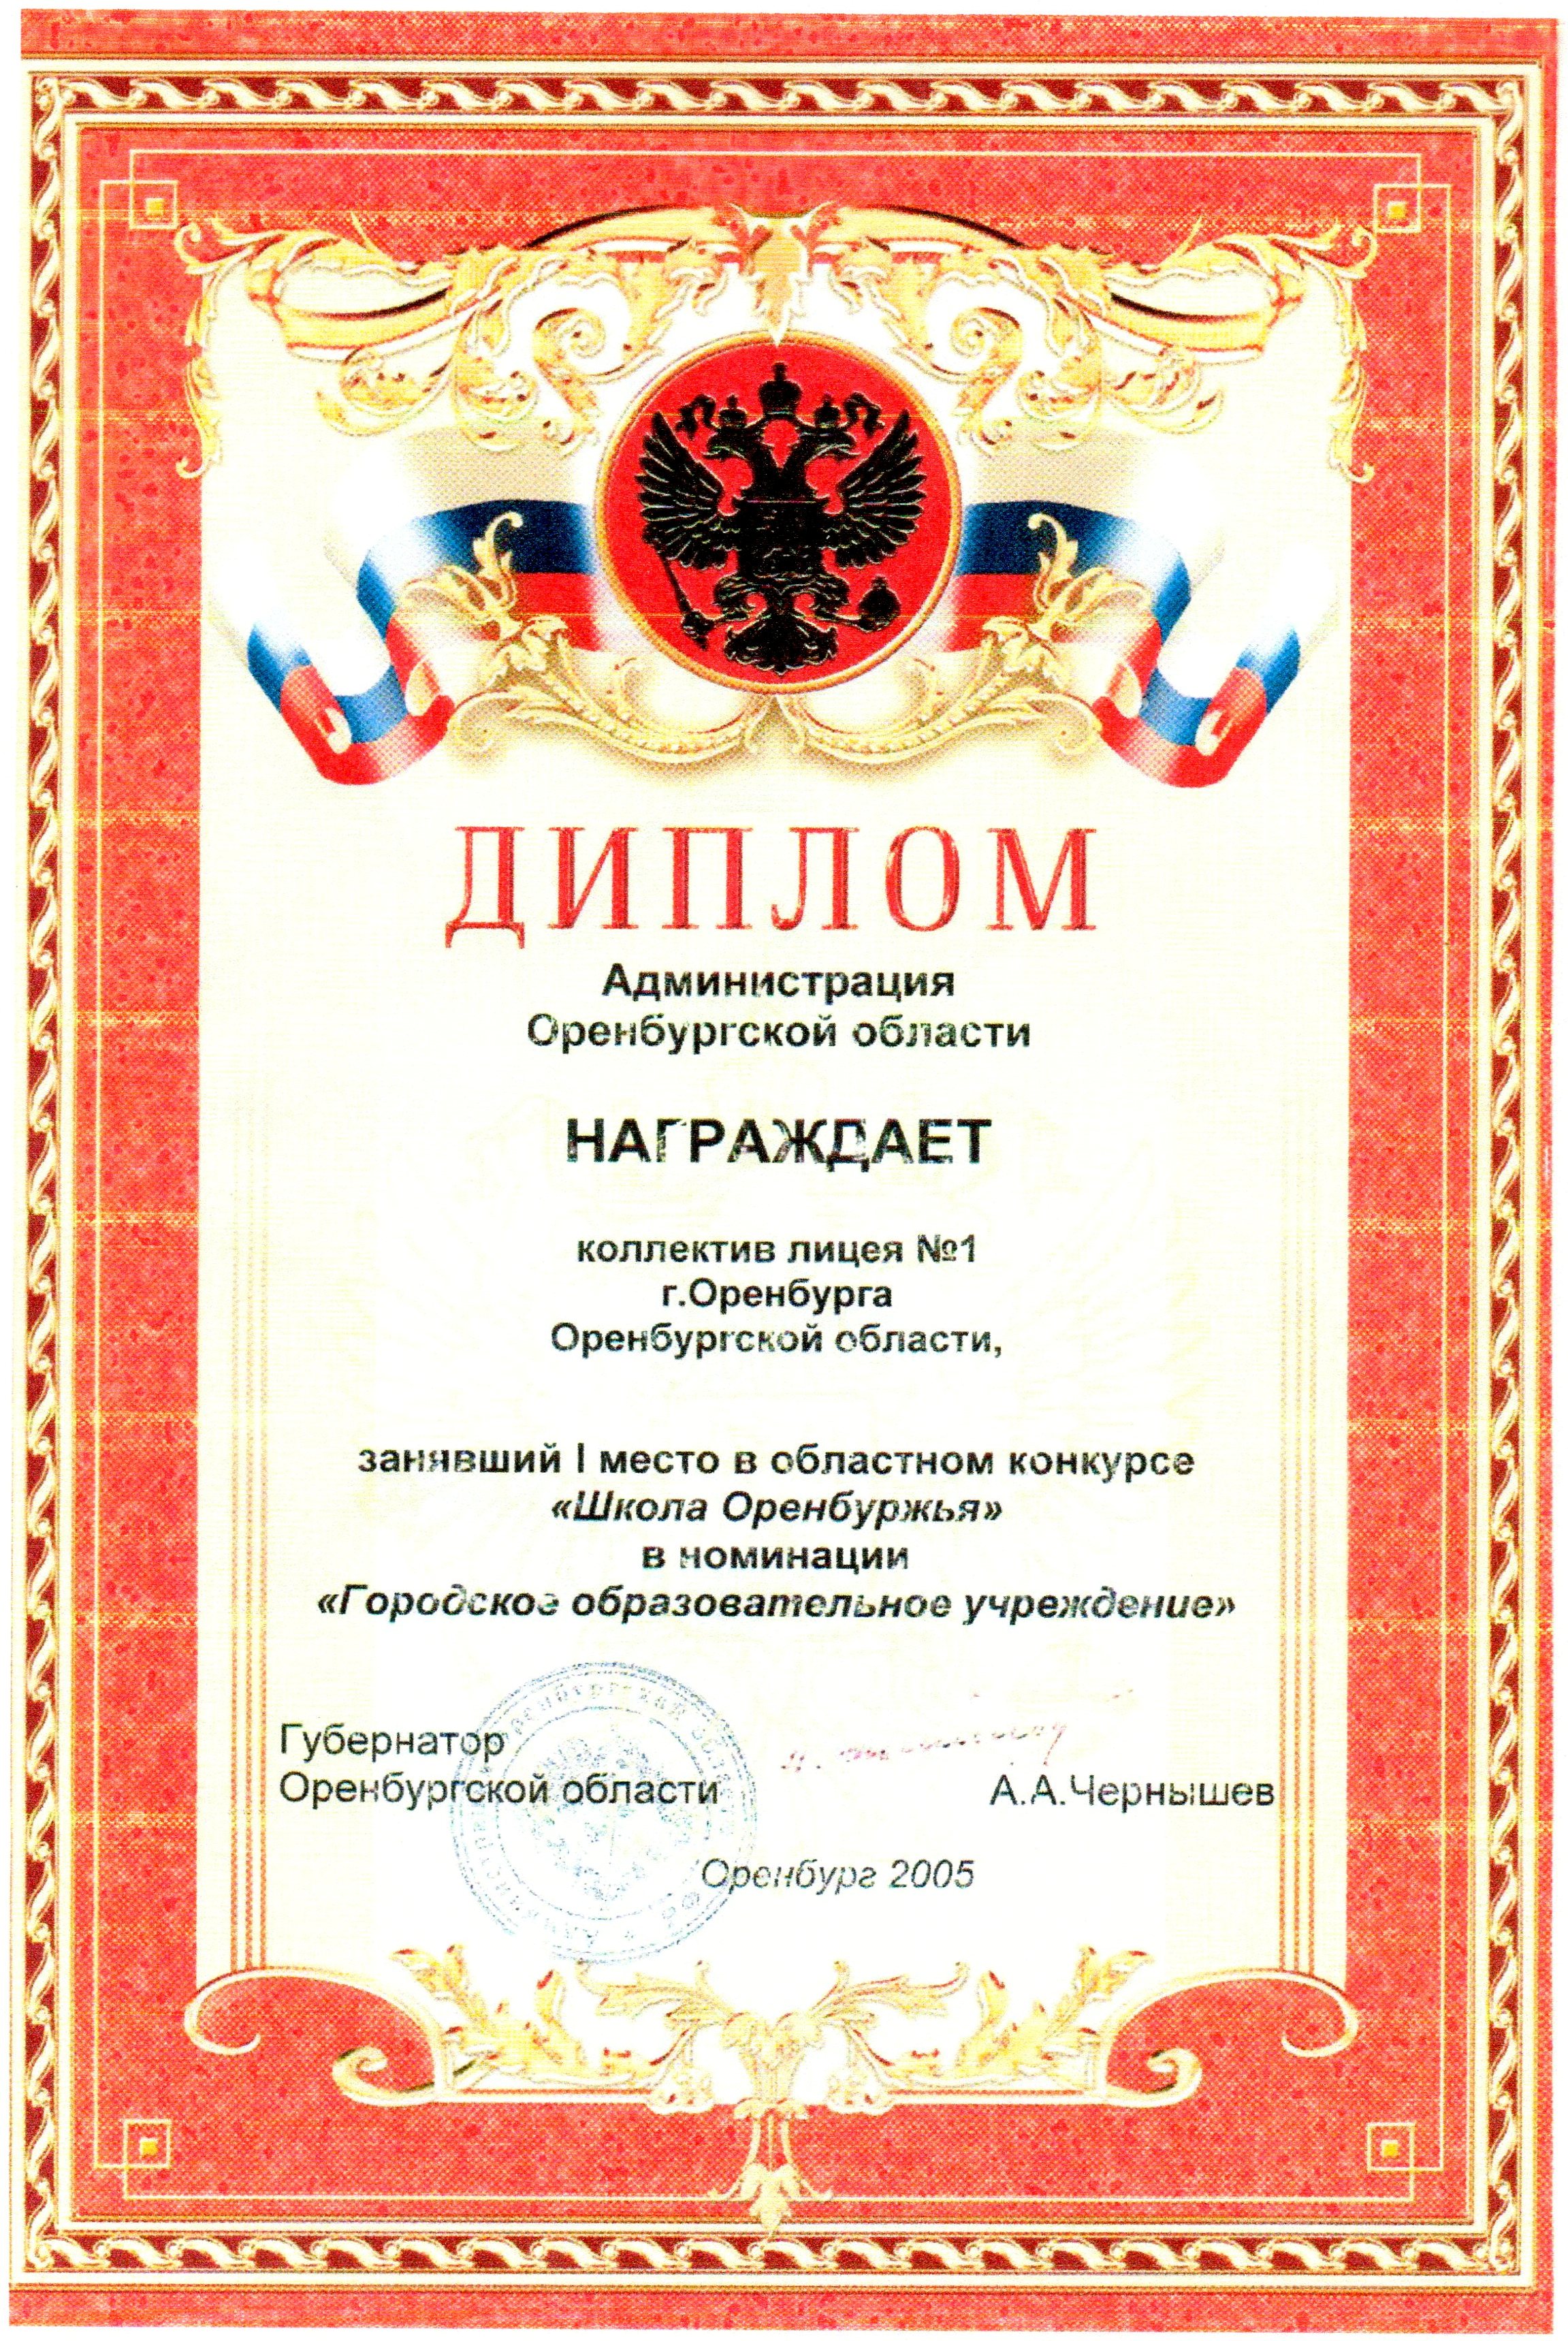 Диплом победителя областного конкурса "Школа Оренбуржья", 2005г.